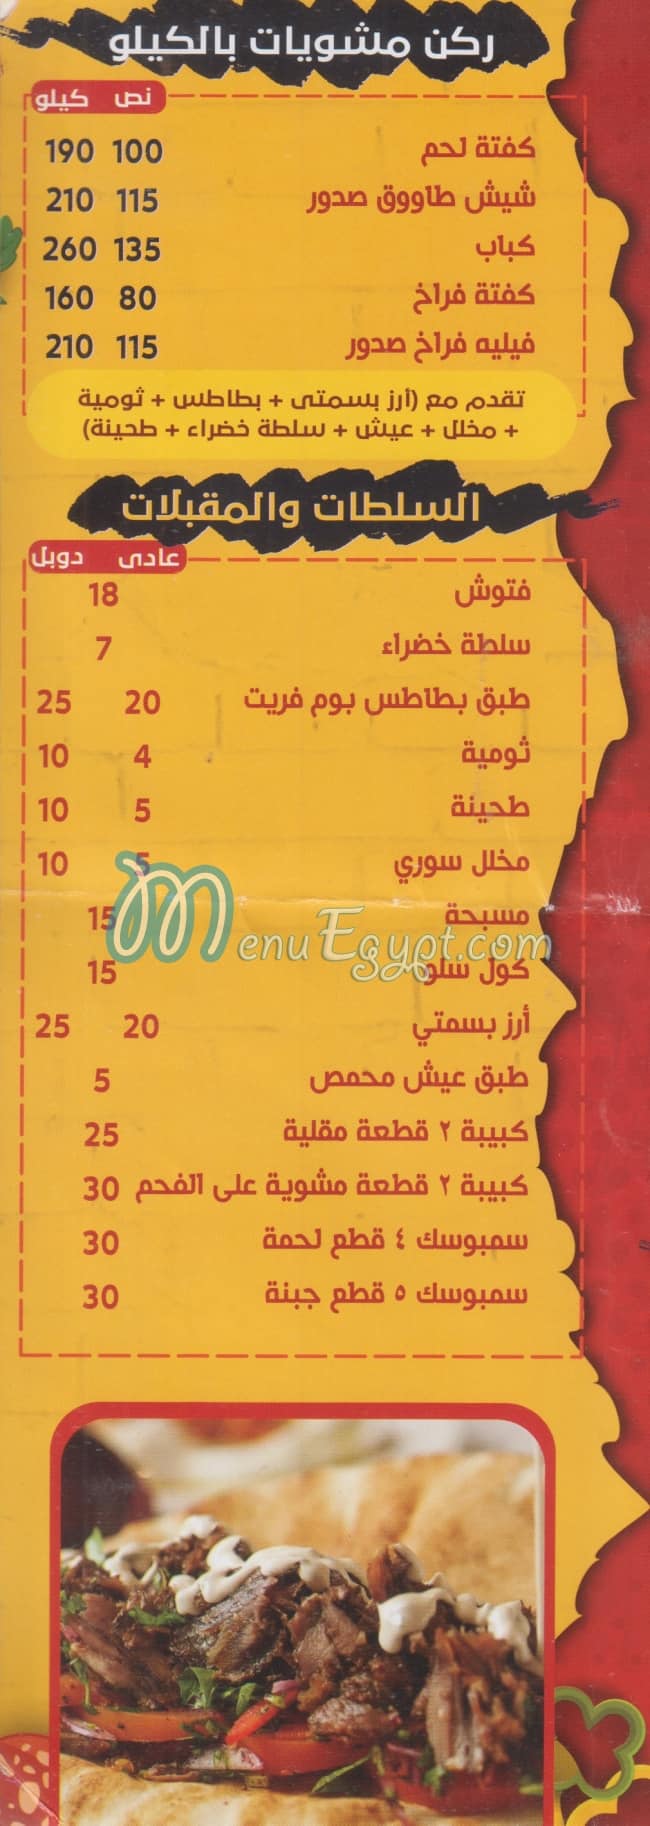 Soltan El sham Fesal delivery menu